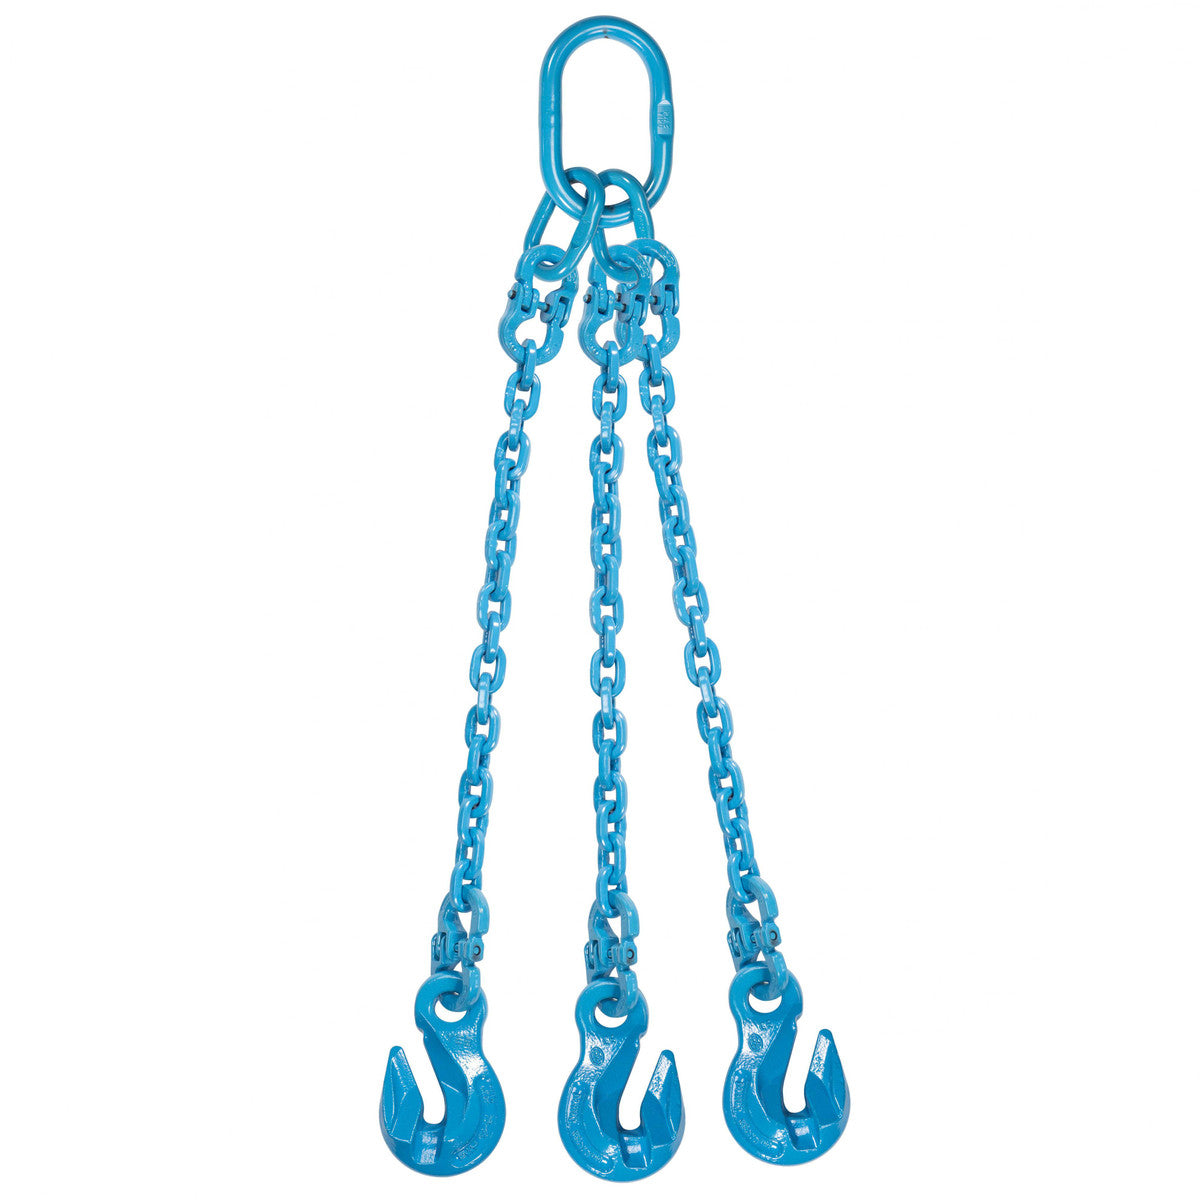 9/32" x 4' - Pewag 3 Leg Chain Sling w/ Grab Hooks - Grade 120